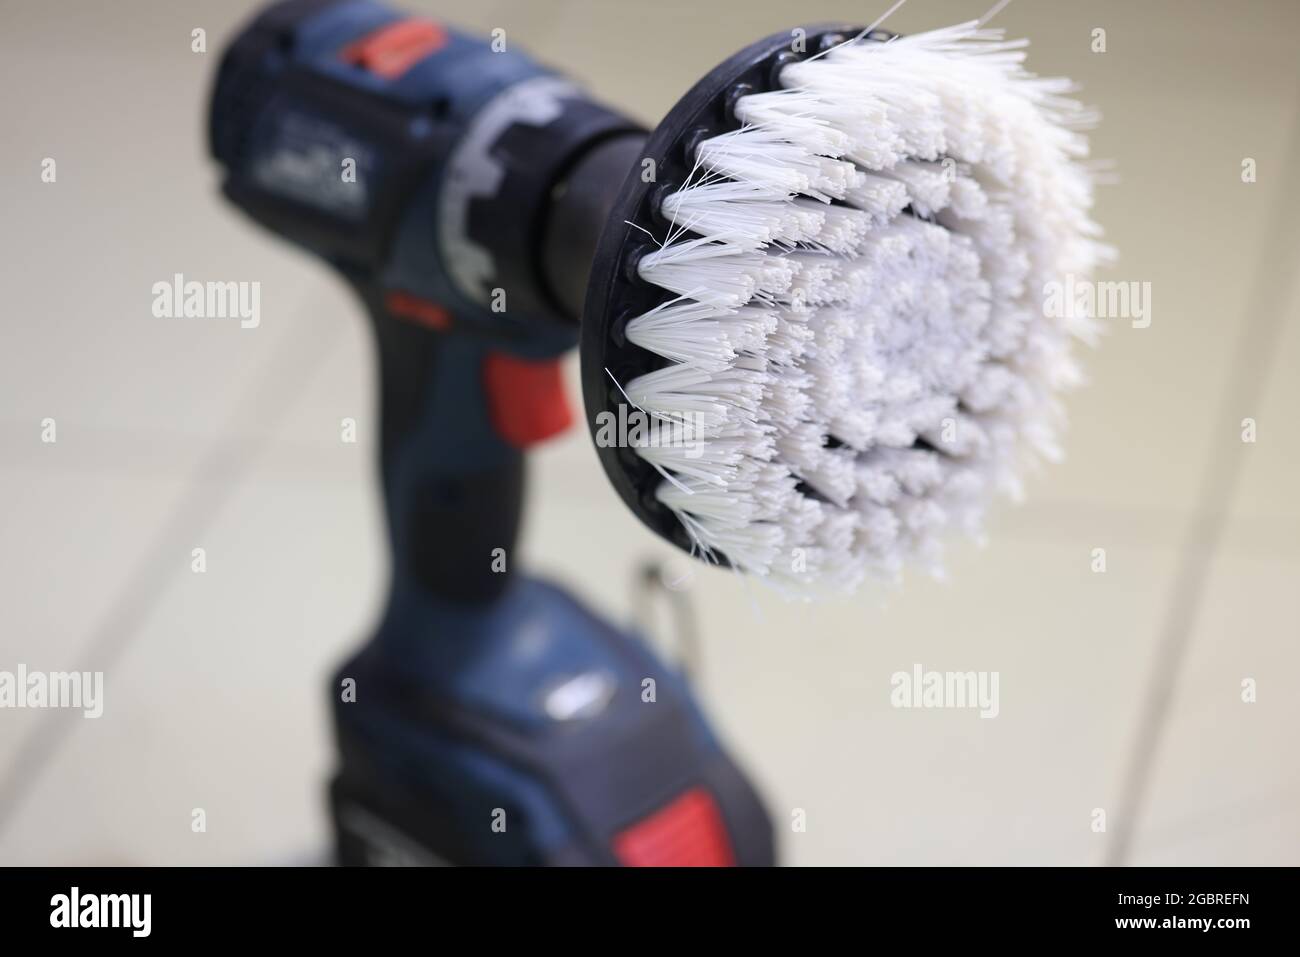 Nahaufnahme der Bürste an der Auto-Poliermaschine Stockfotografie - Alamy